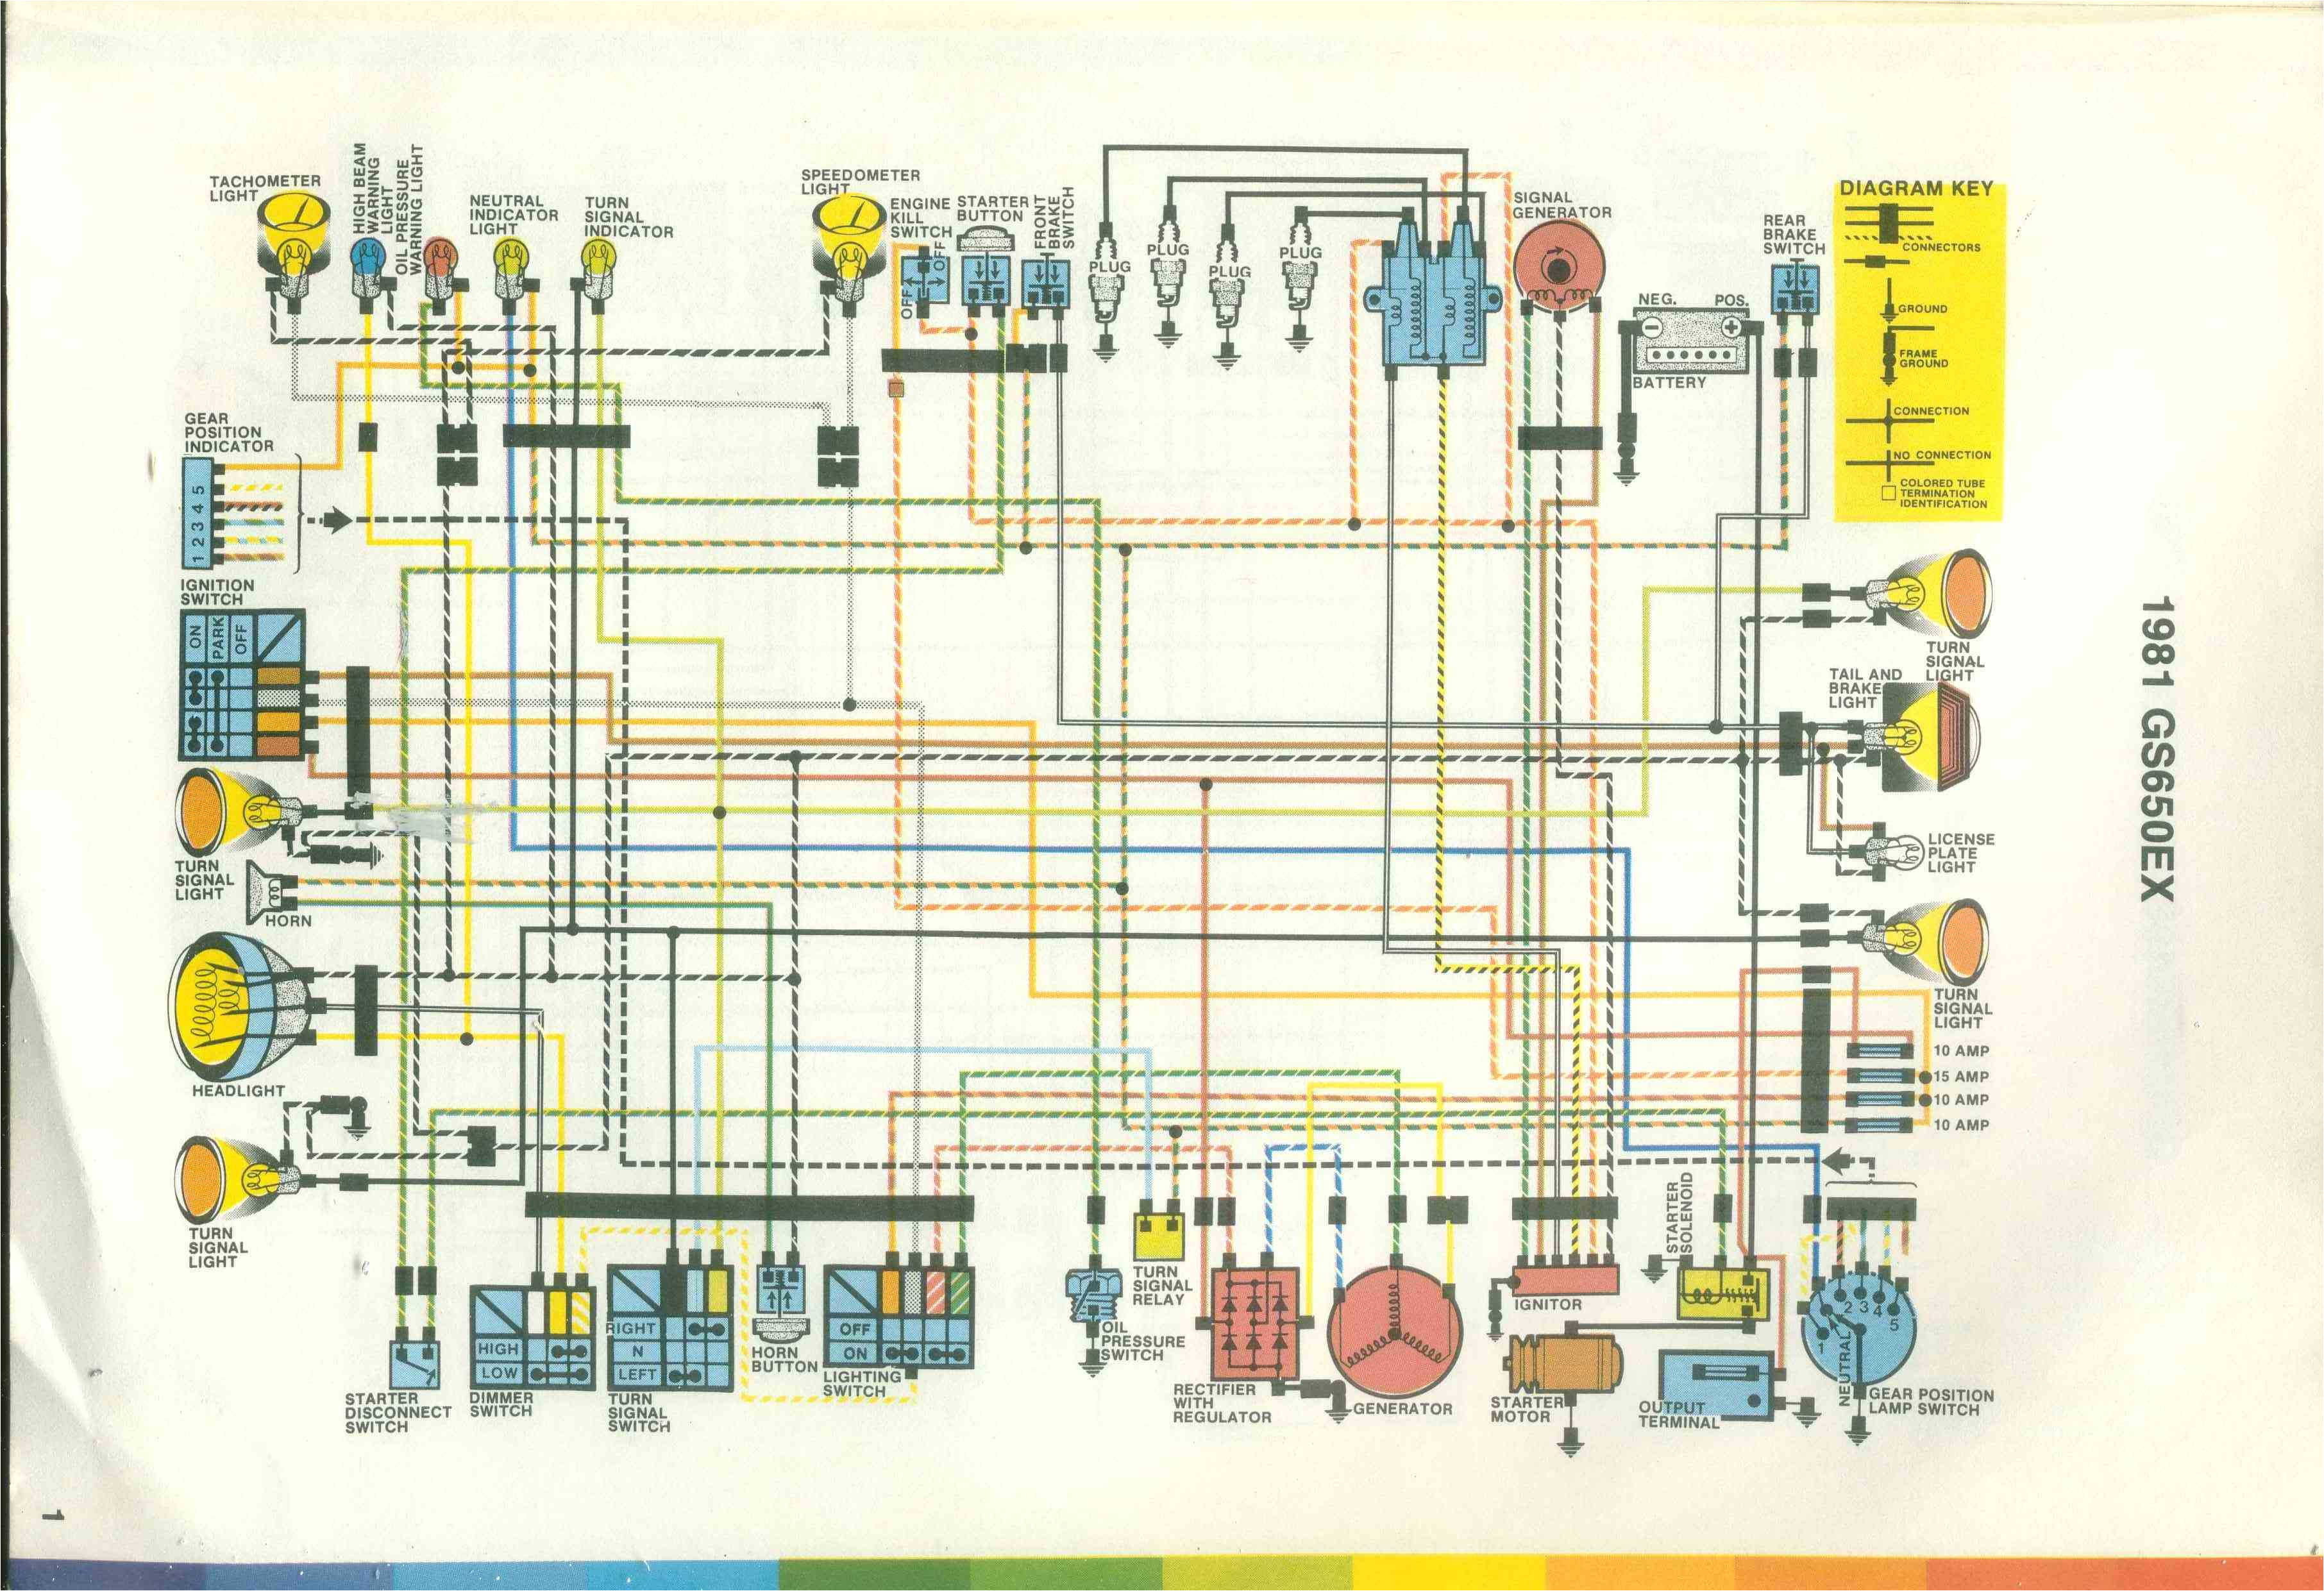 suzuki gs1000 wiring diagram wiring diagramwiring harness suzuki gt 550 wiring diagram namewrg 1822 wiring